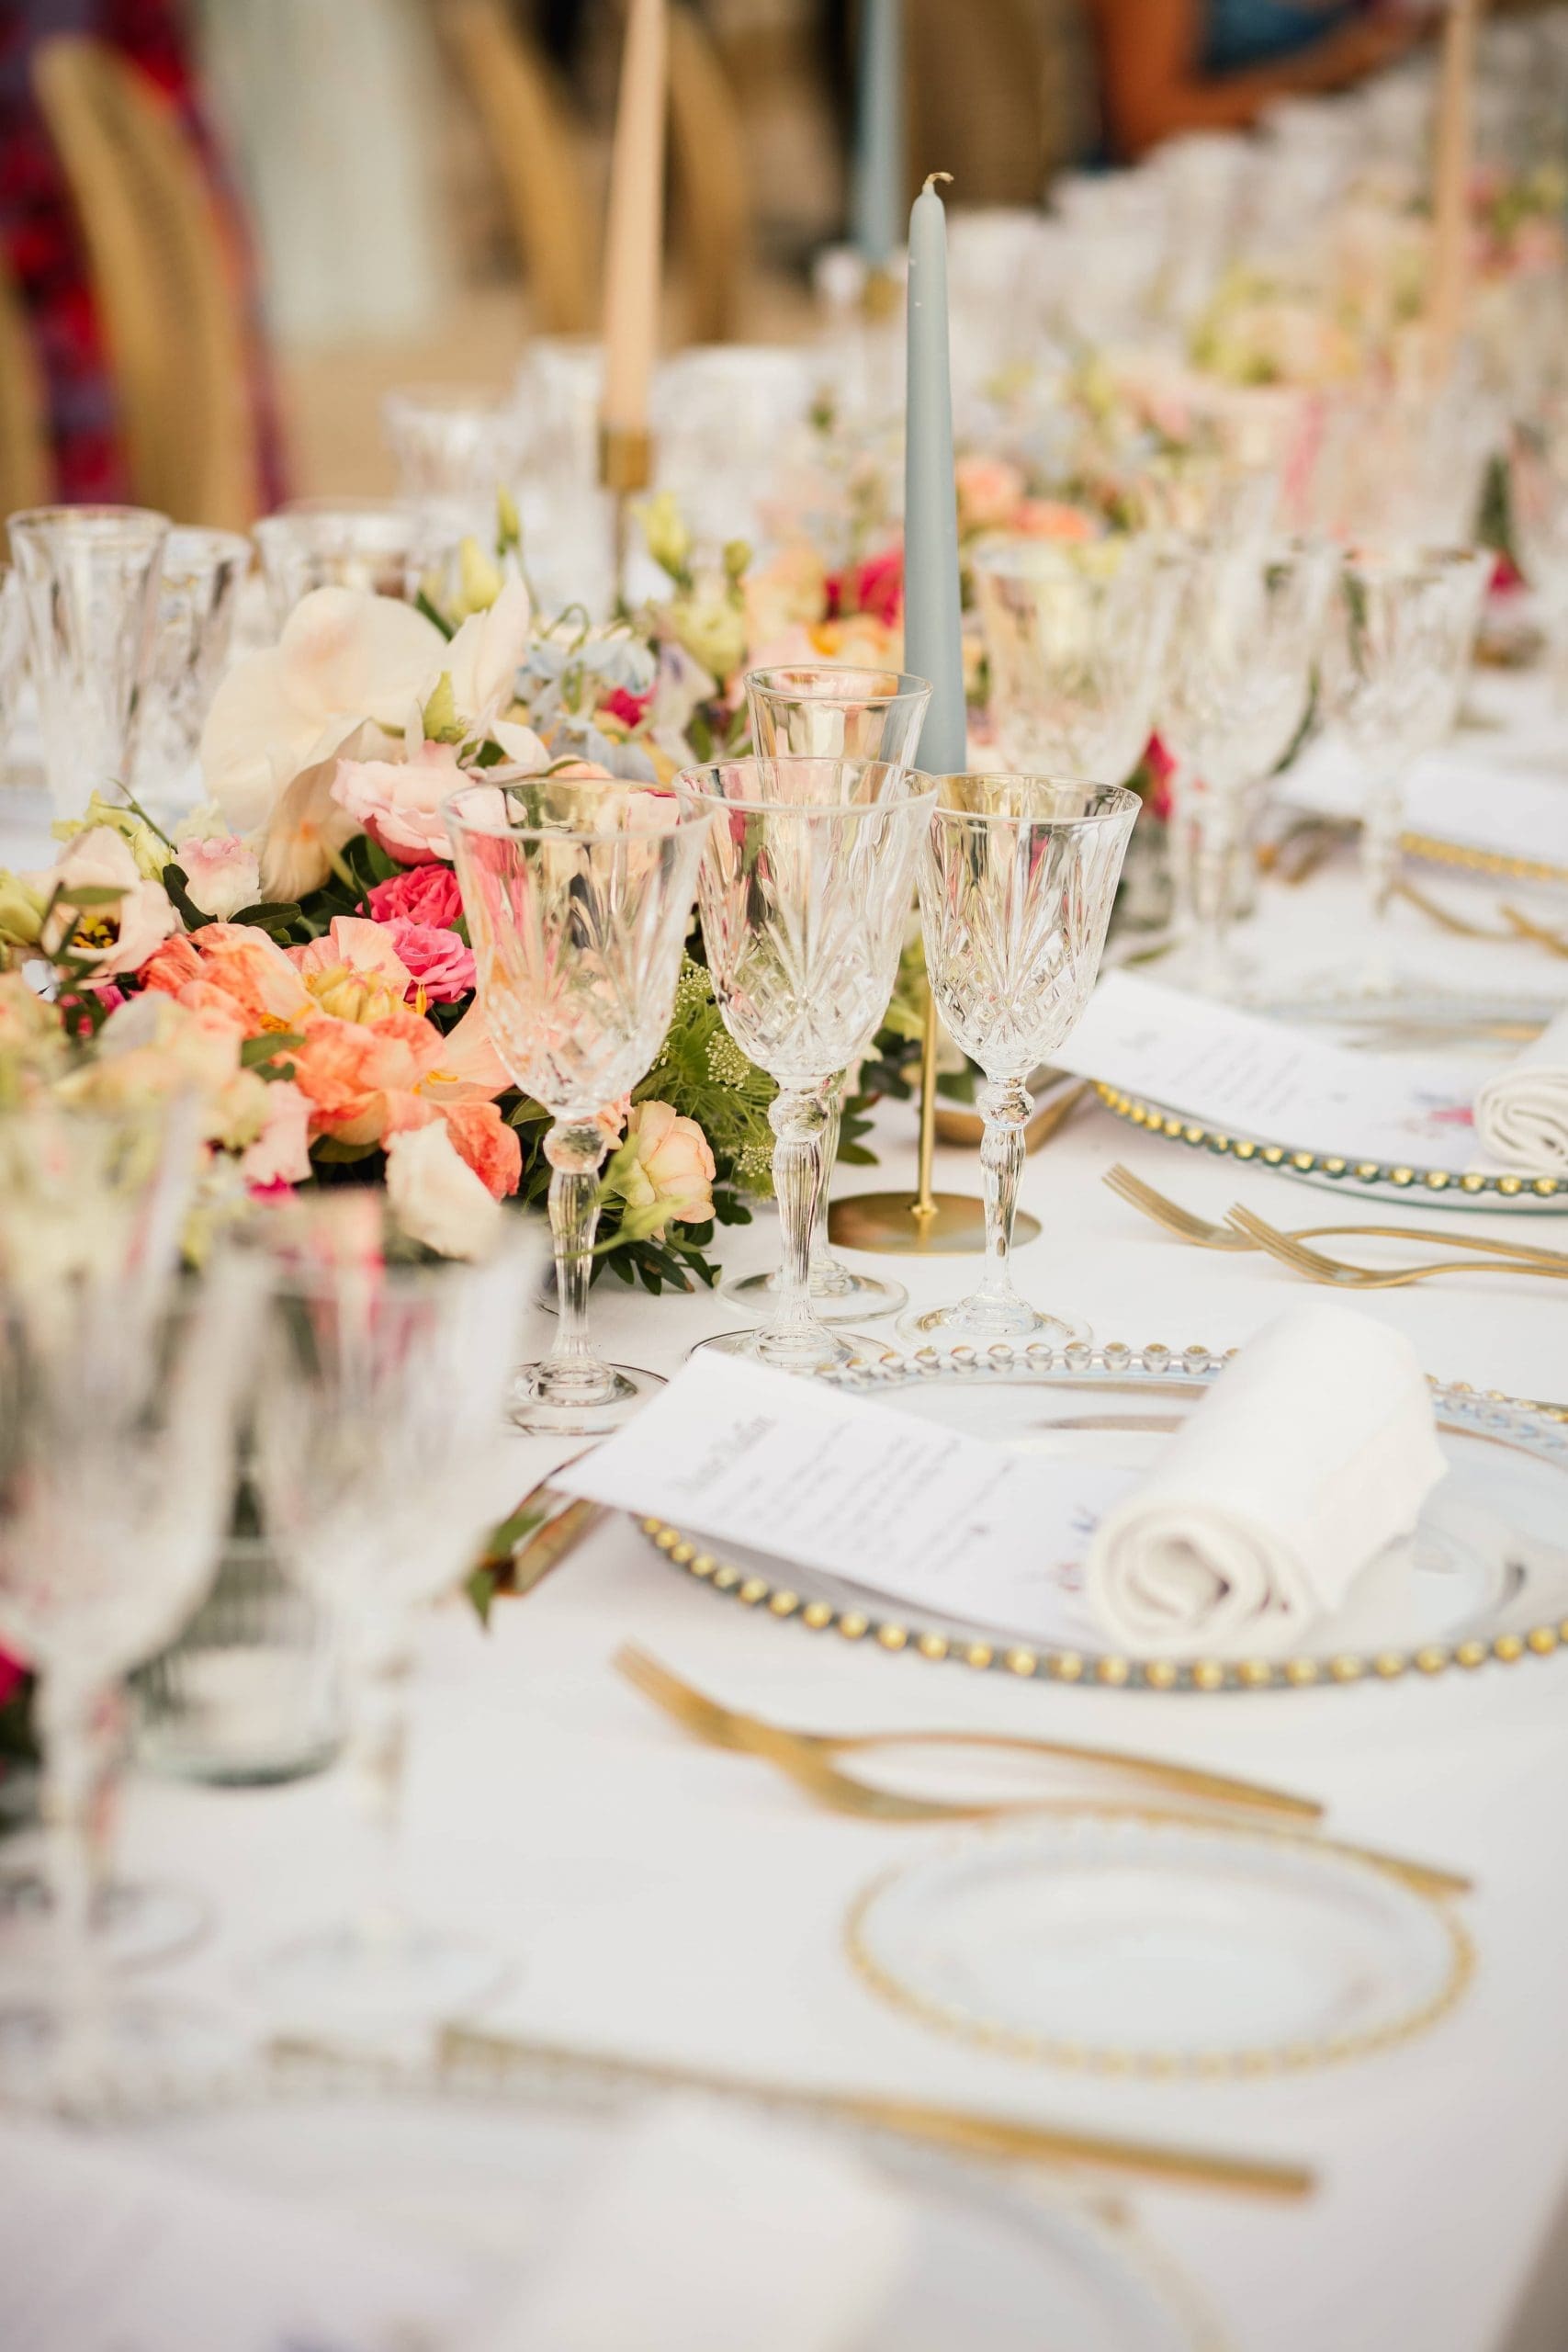 Mesa de bodas decorada por Bouclé Weddings en Mallorca con flores coloridas, cubertería dorada y cristalería brocada.